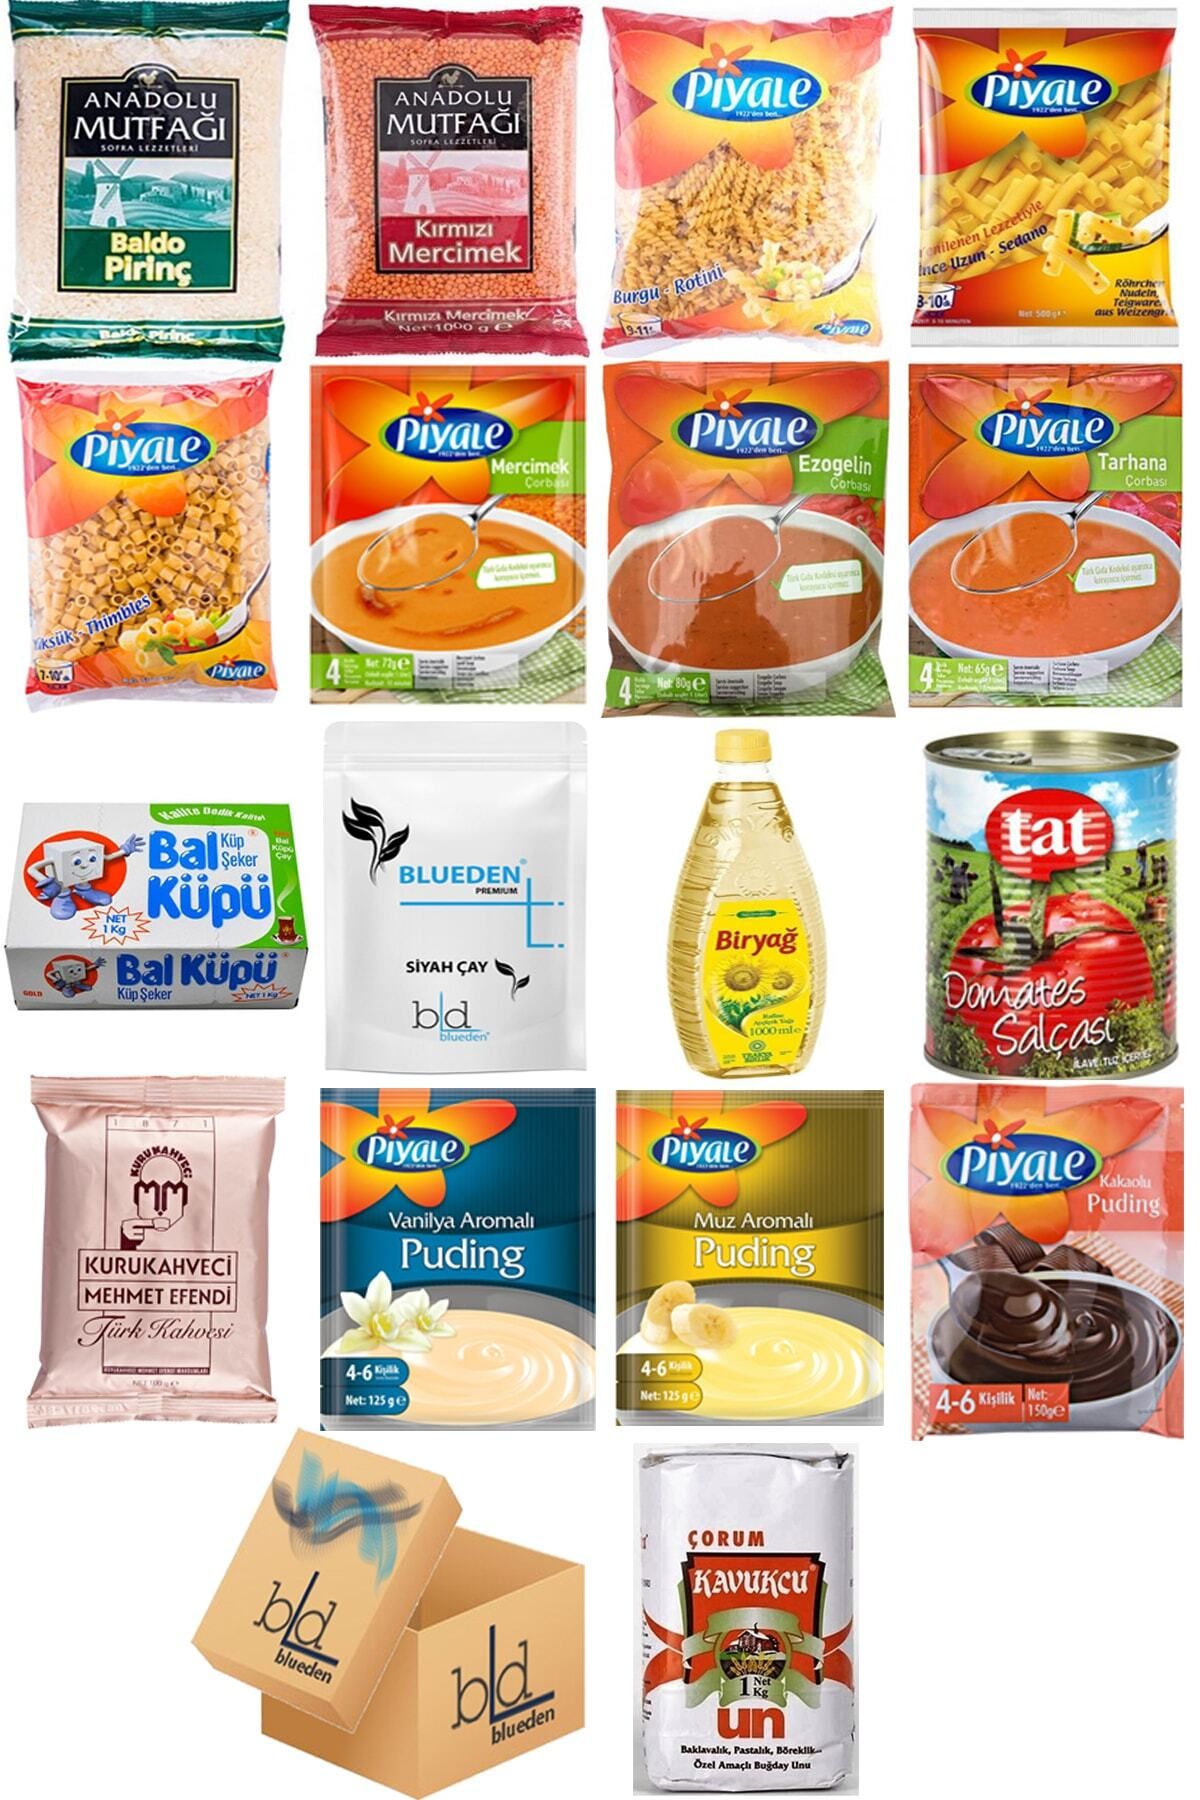 bd blueden - Ramazan Paketi Kumanya Ezrak Gıda Yardım Kolisi 17 Parça 54 Nolu Paket